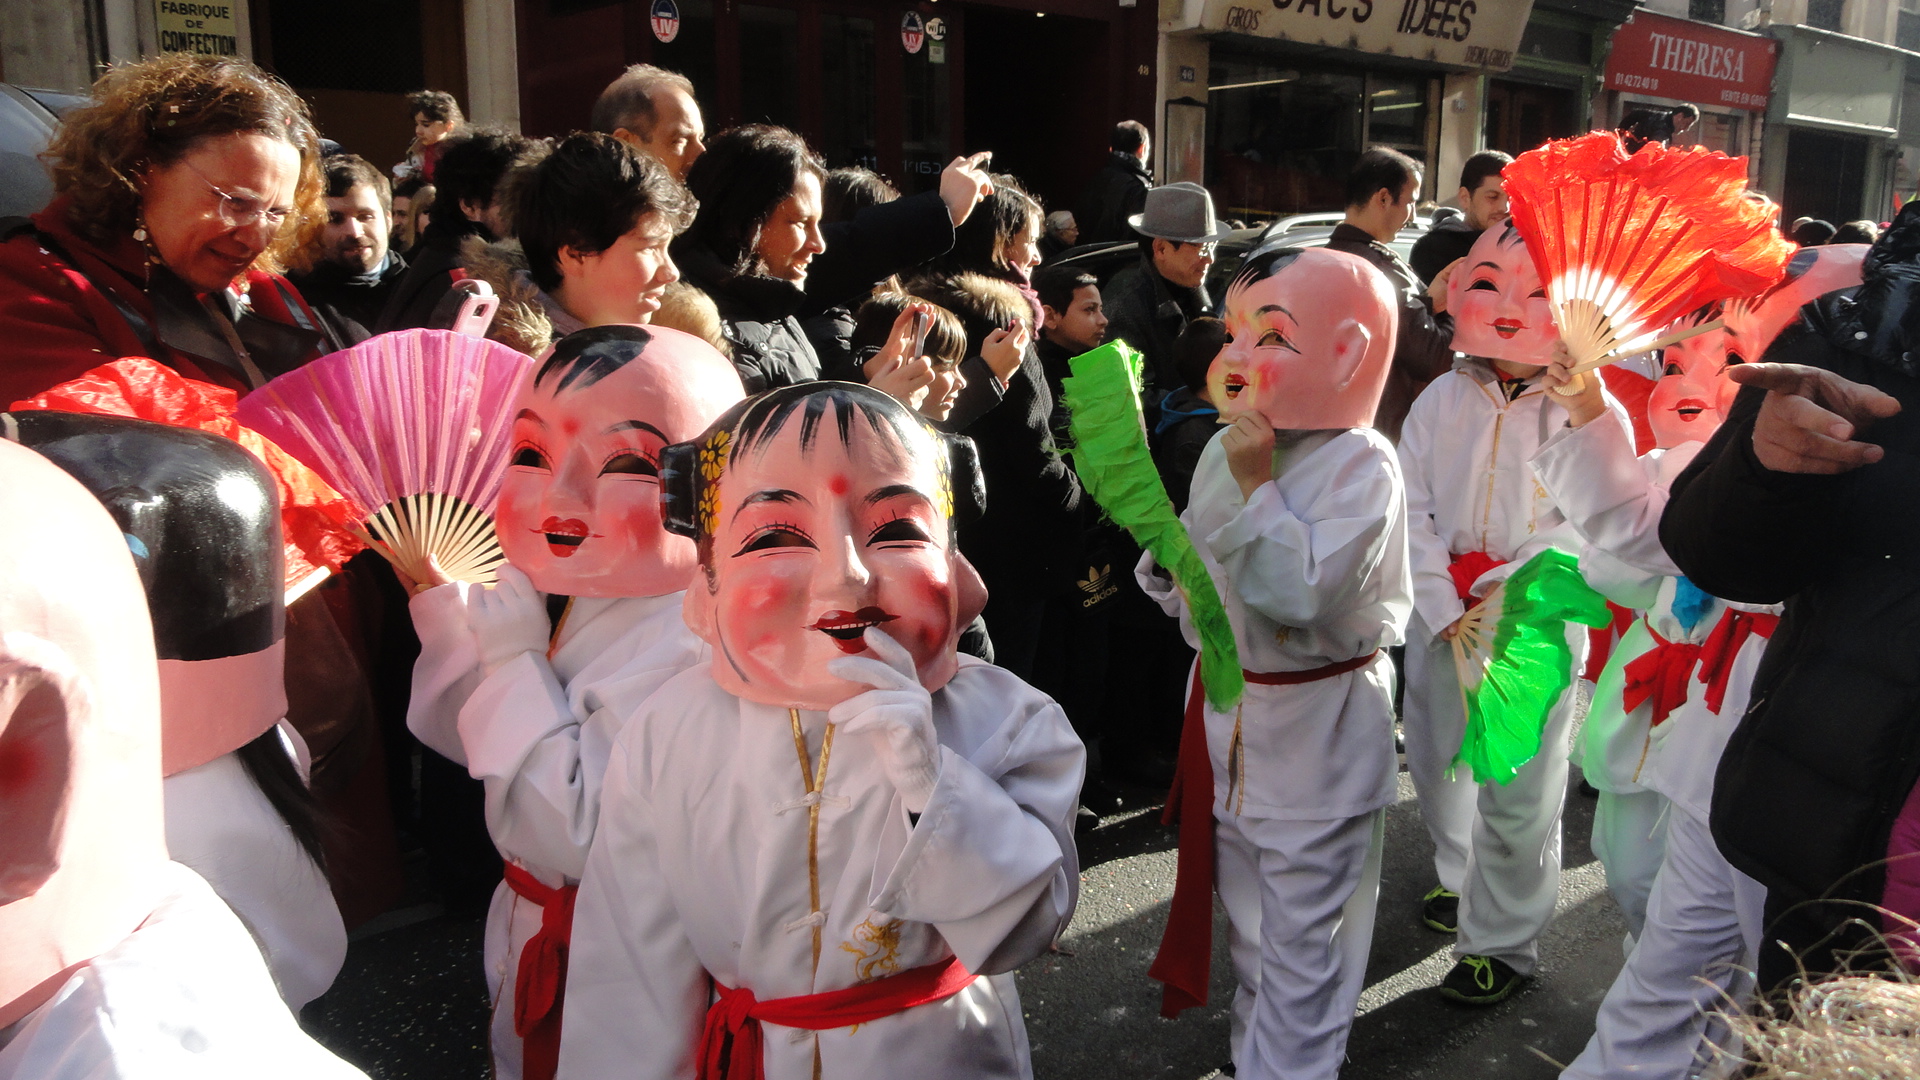 Nouvel an chinois dans le Marais - Rue du Temple